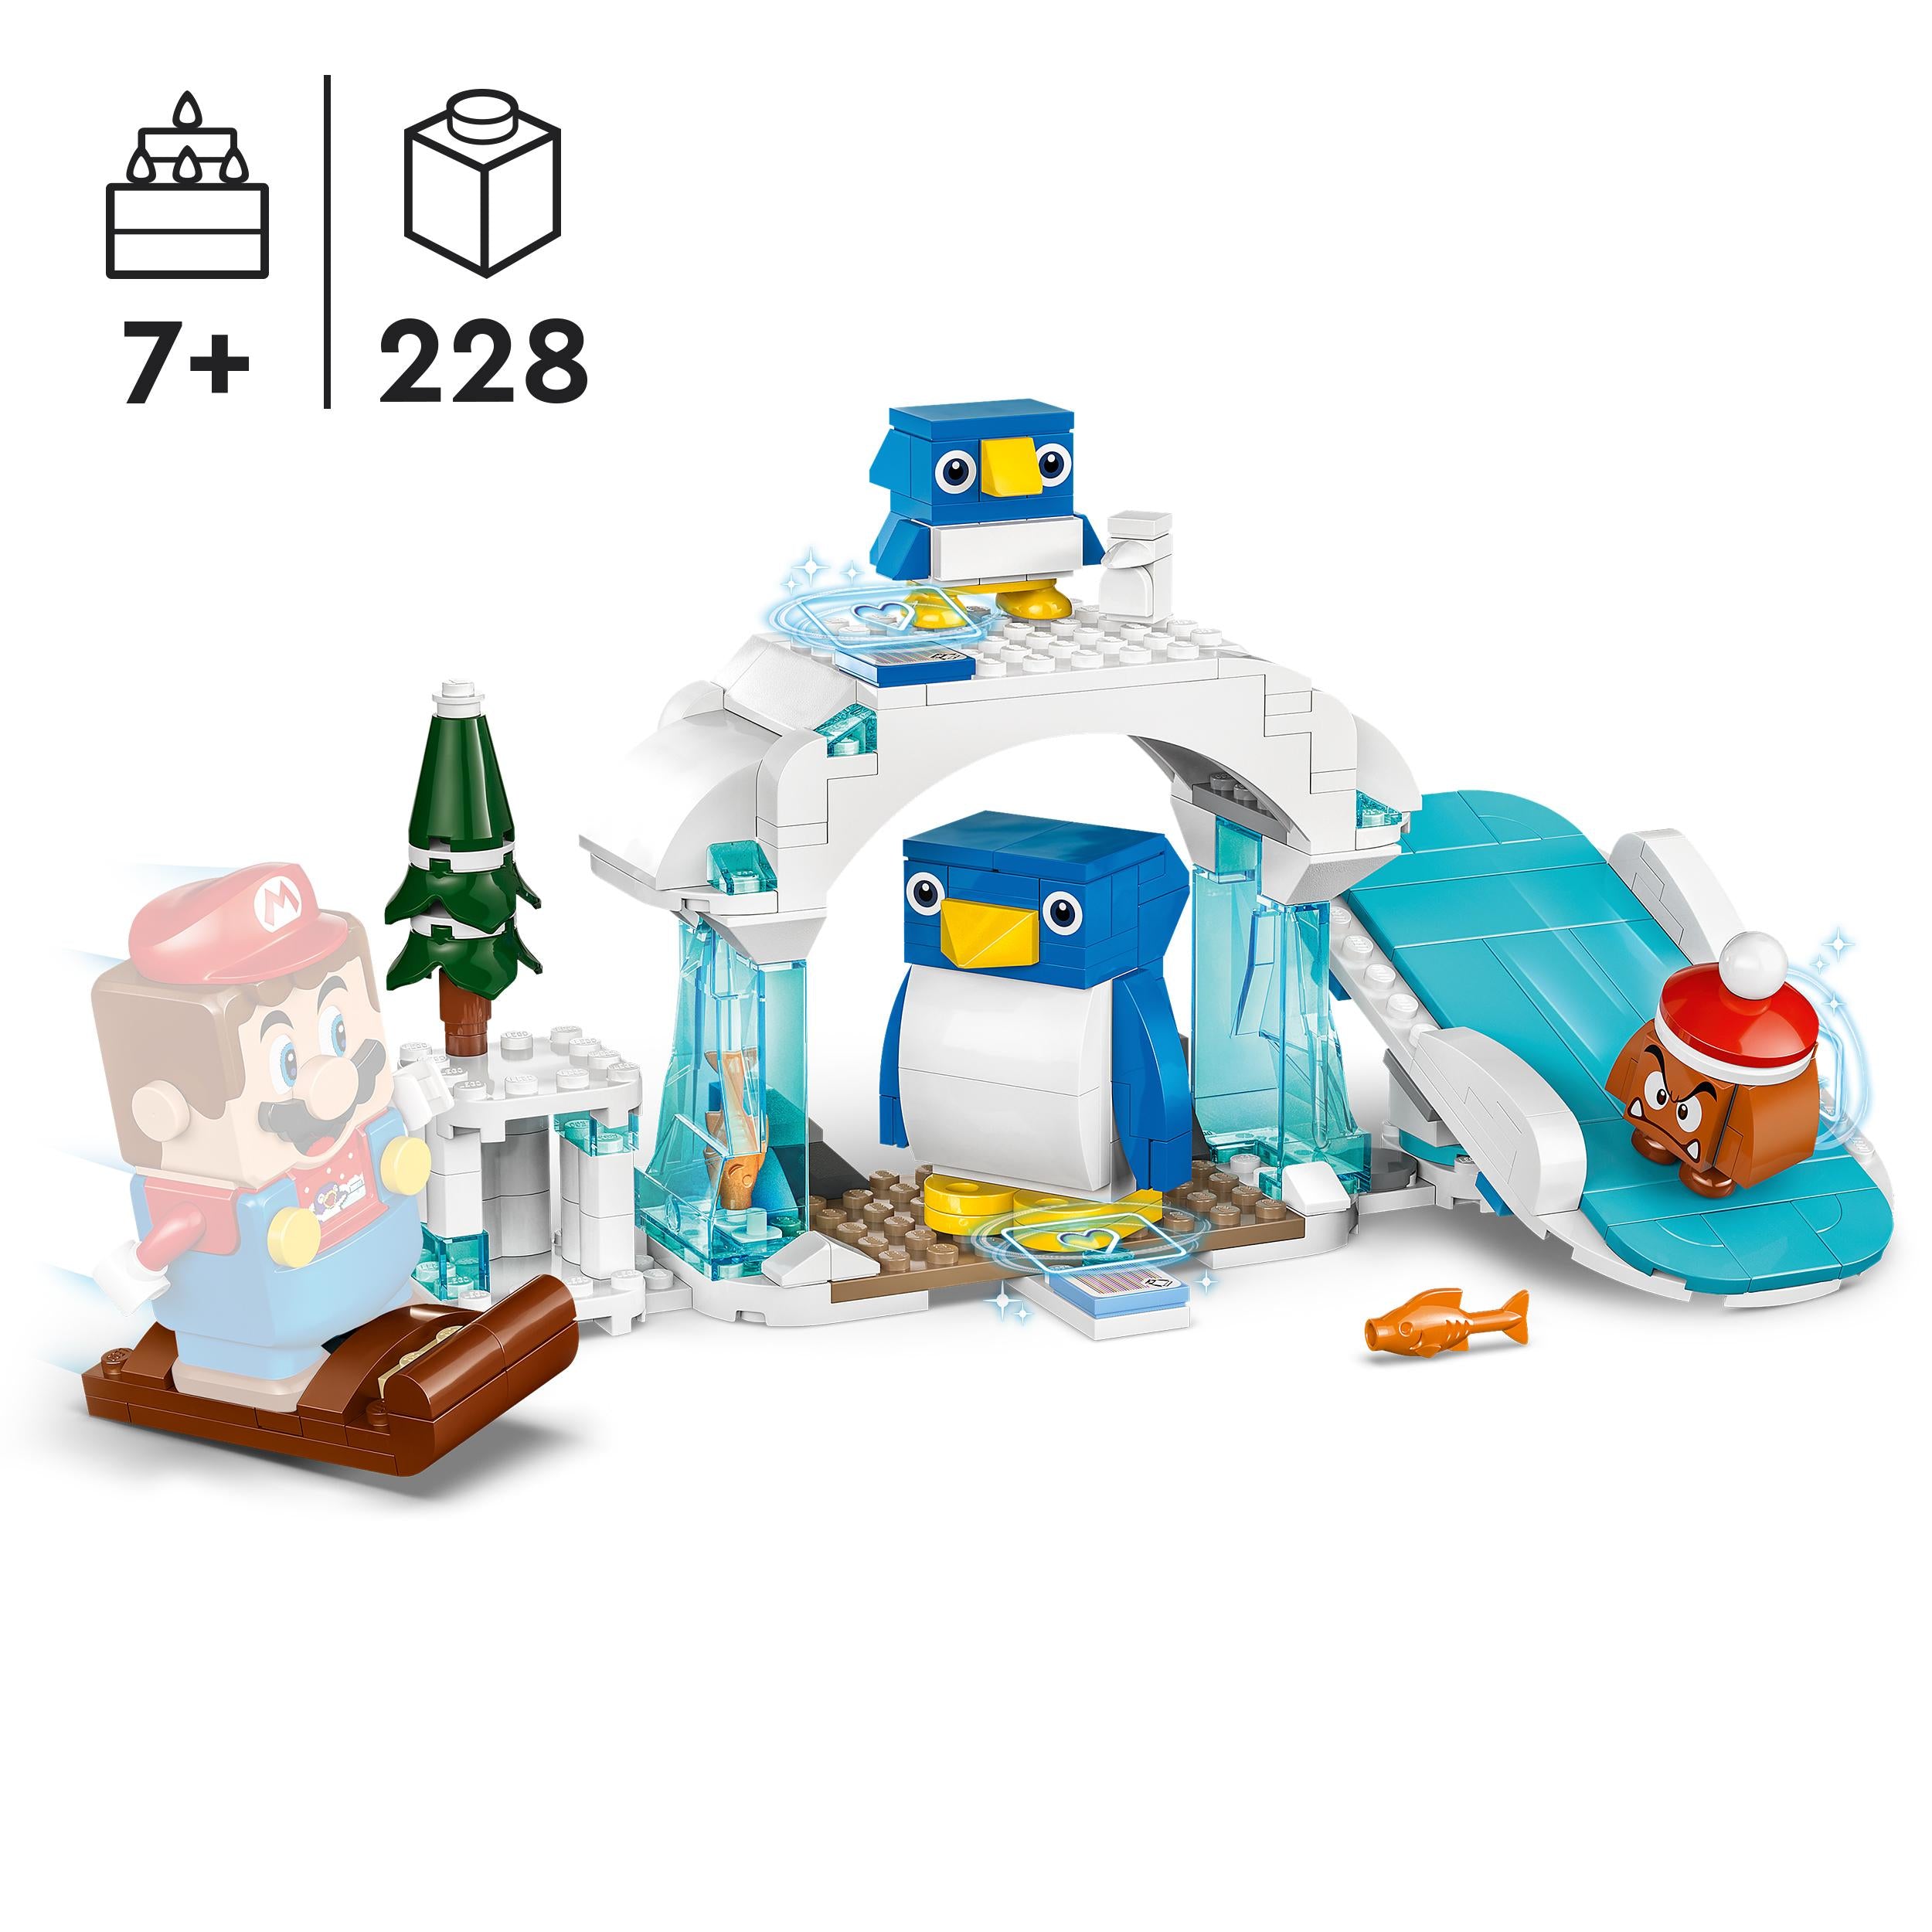 71430 LEGO Super Mario Pack di espansione La settimana bianca della famiglia Pin